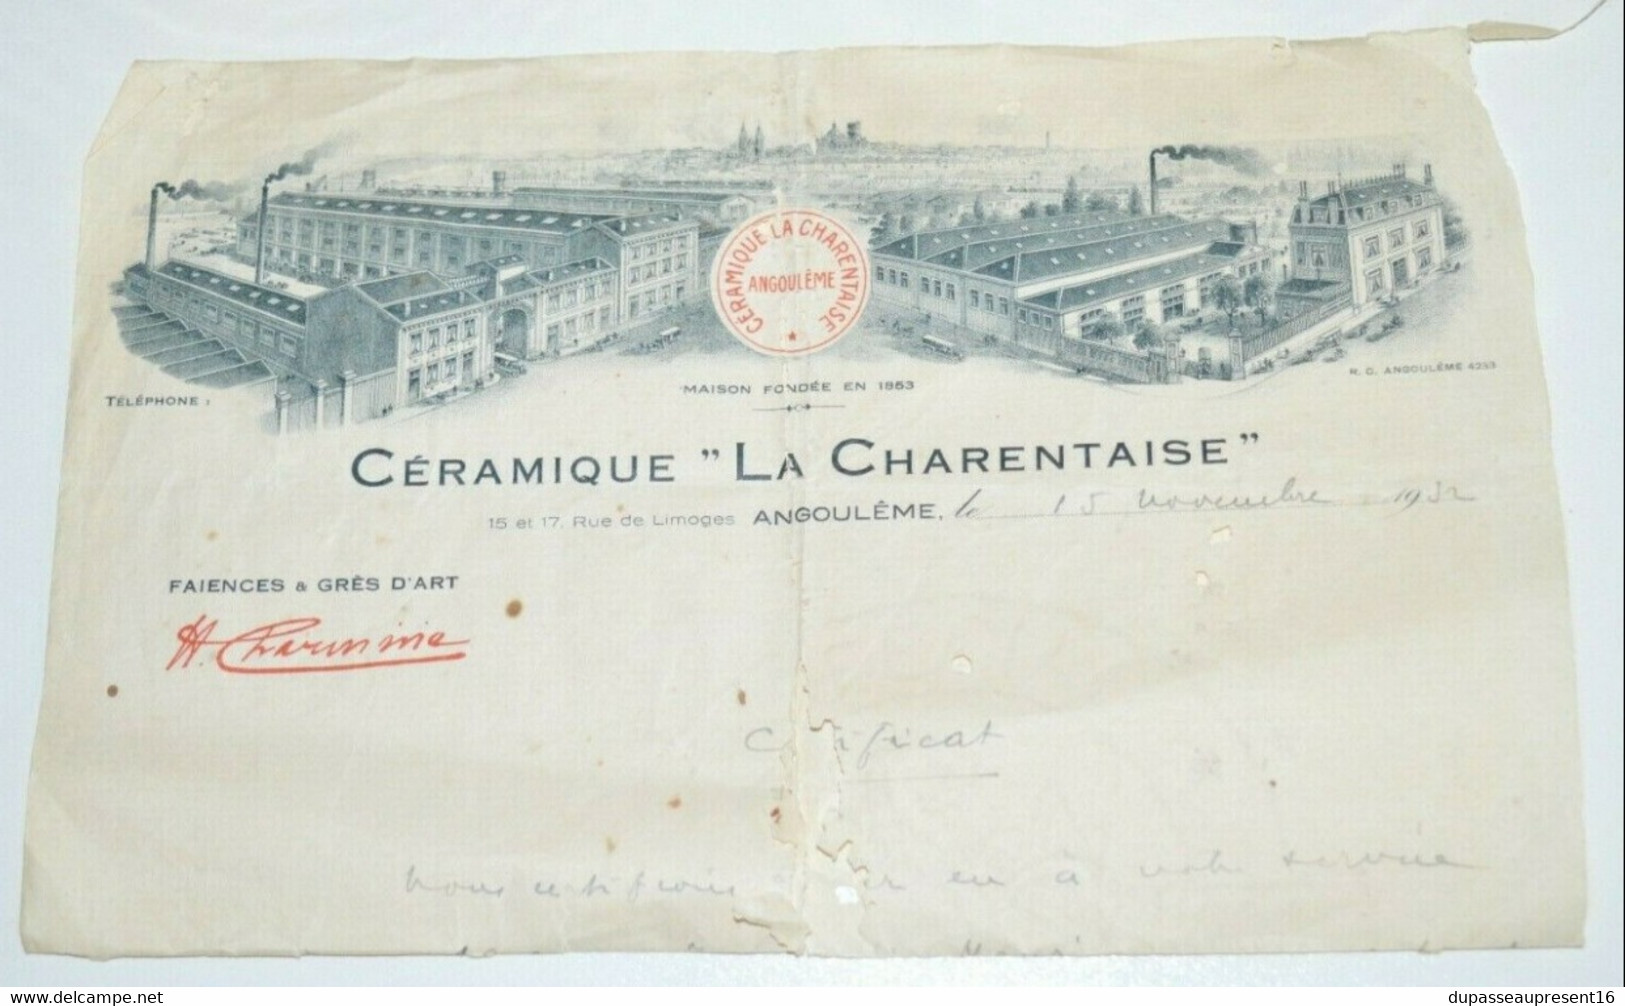 BELLE PAIRE De GRANDS VASES ART DECO CERAMIQUE LA CHARENTAISE NO RENOLEAU 1930 COLLECTION DECO VITRINE - Angoulême/Le Renoleau (FRA)